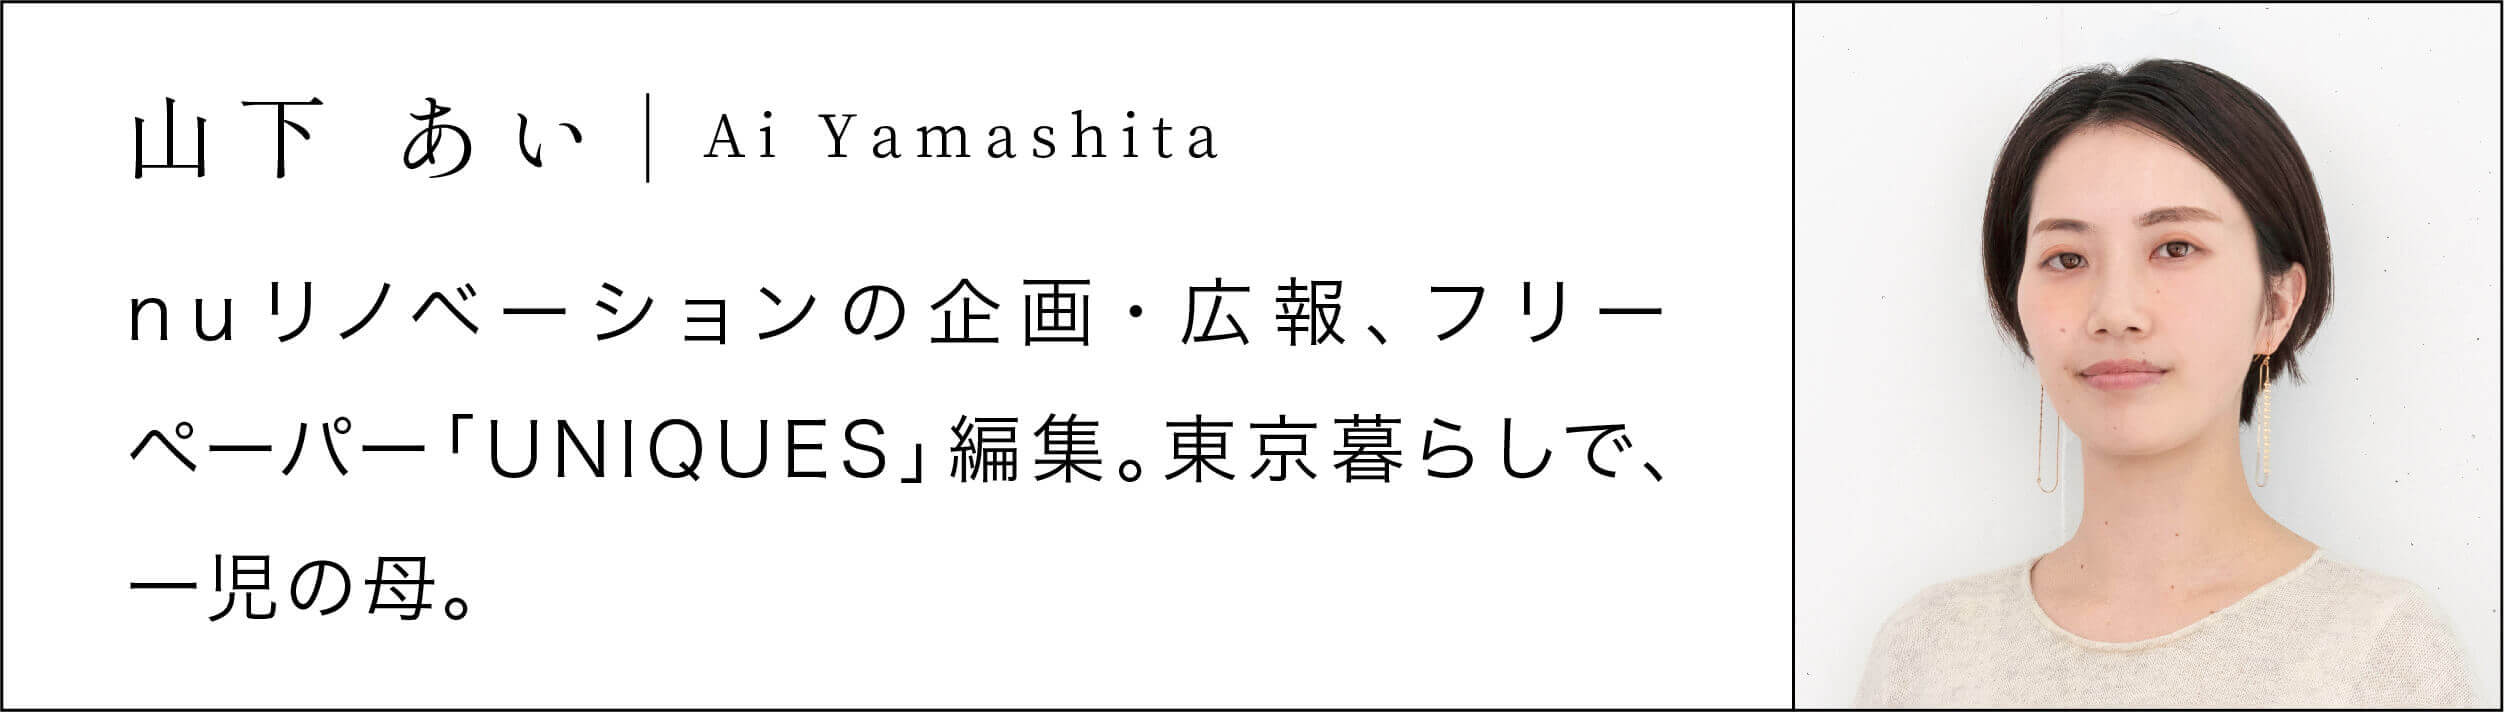 アリスさんvol.2_yamashita